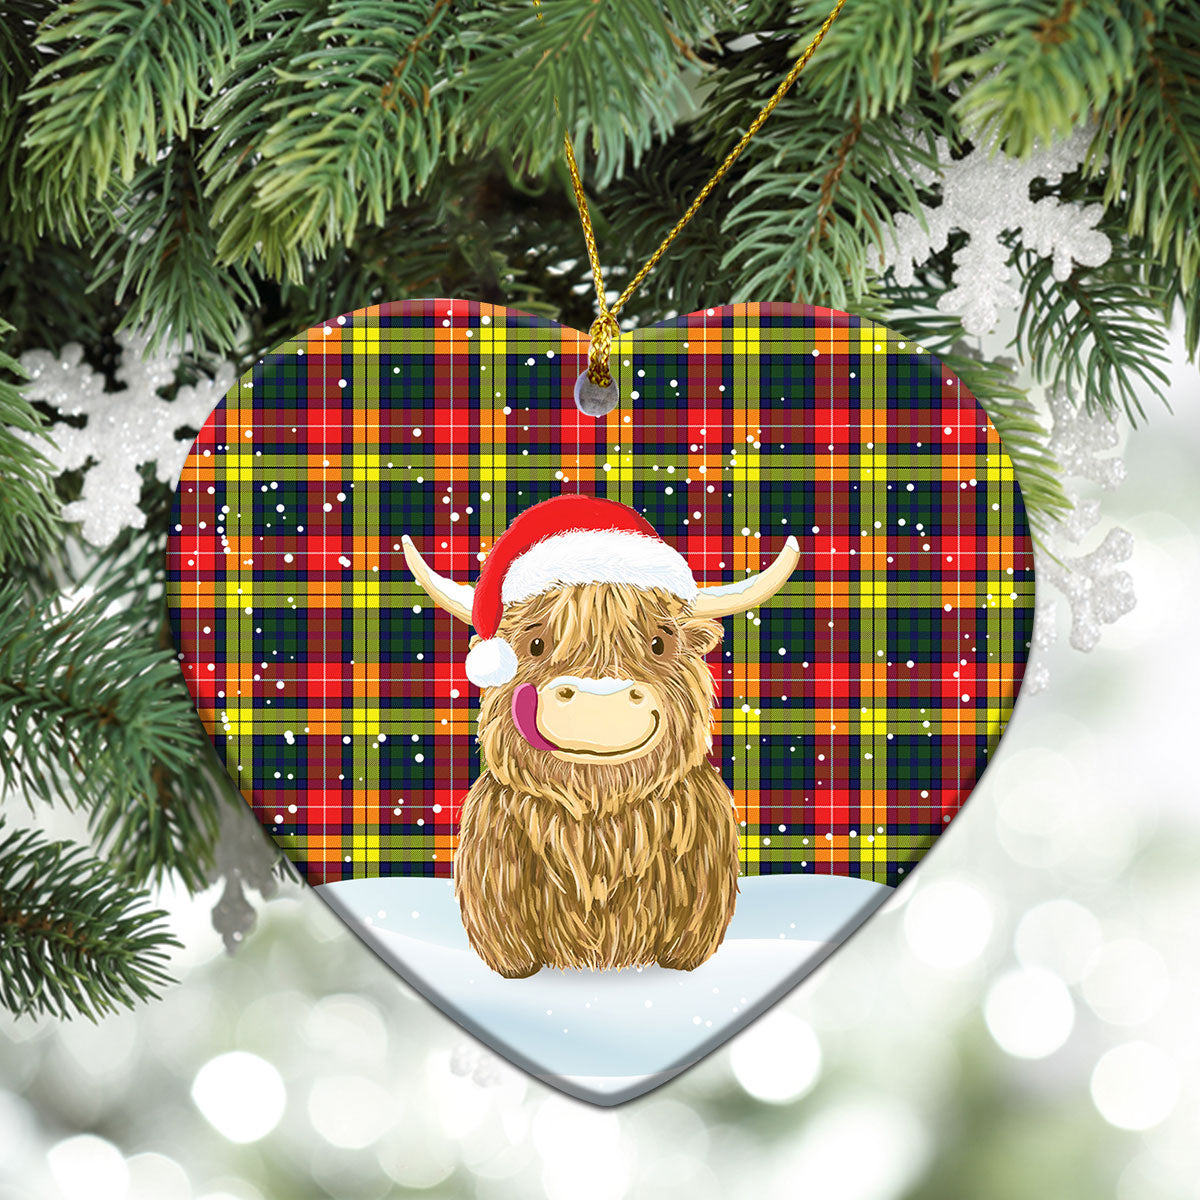 Dewar Tartan Christmas Ceramic Ornament - Highland Cows Style